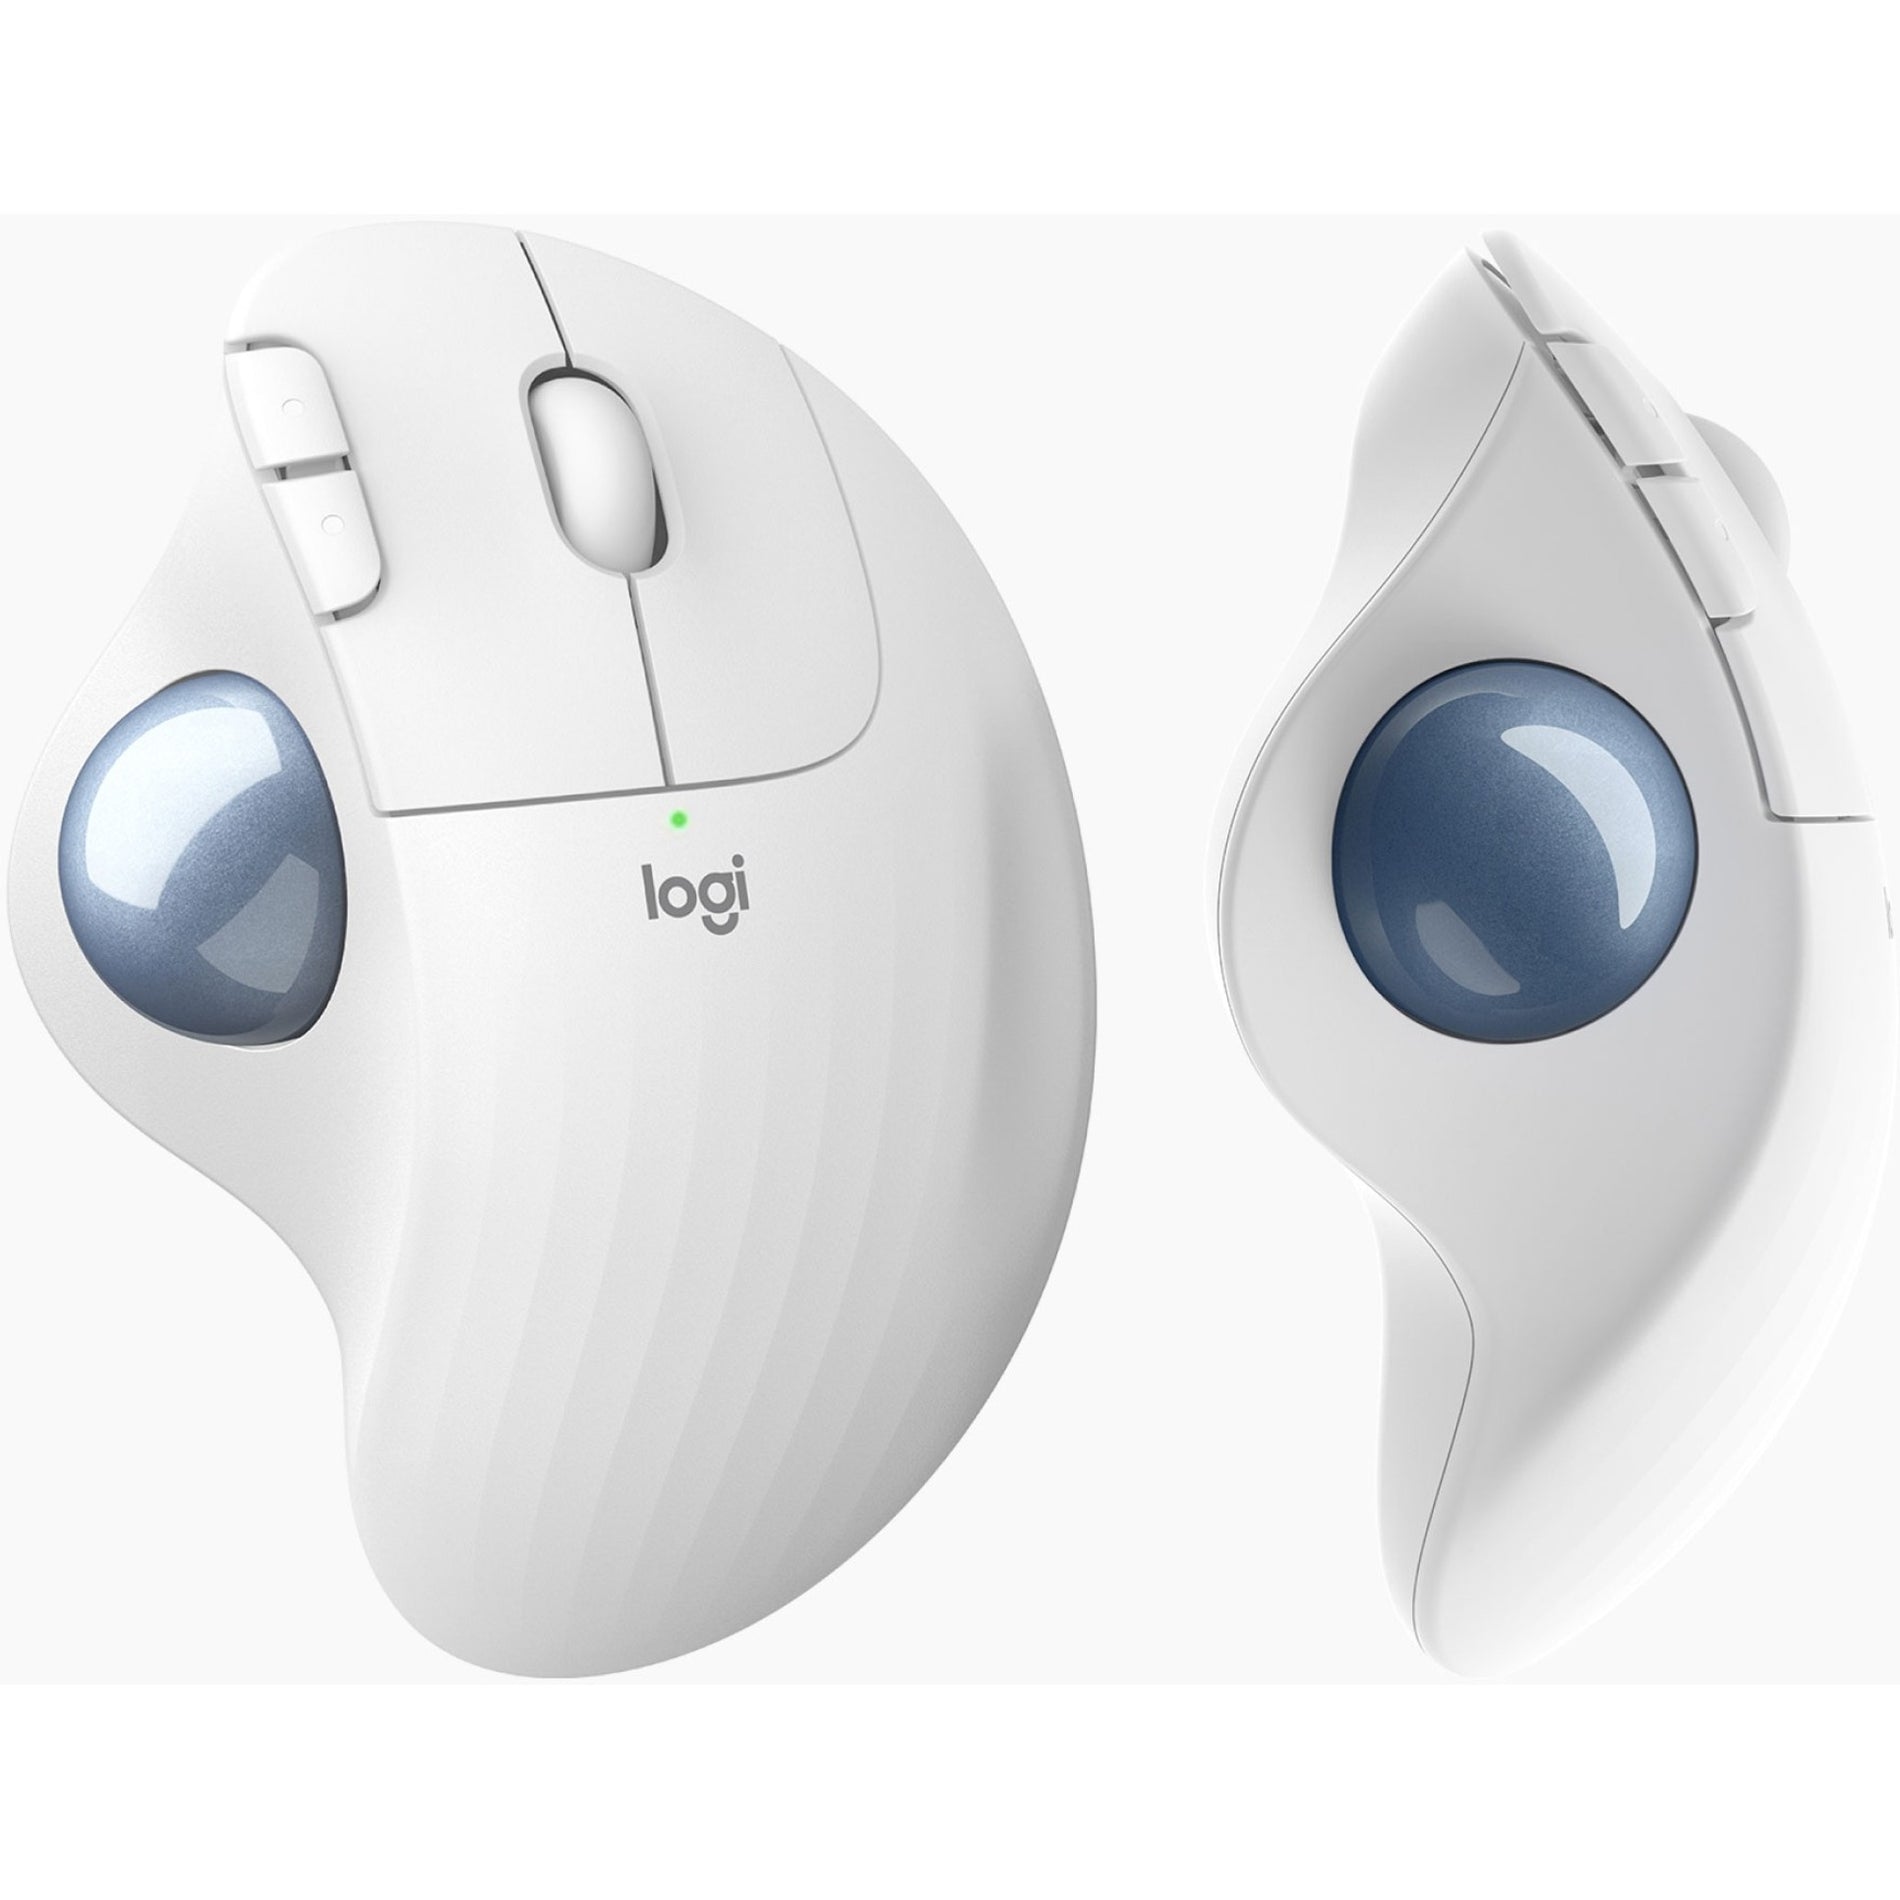 Logitech 910-006437 ERGO M575 Wireless Trackball For Business, Off White